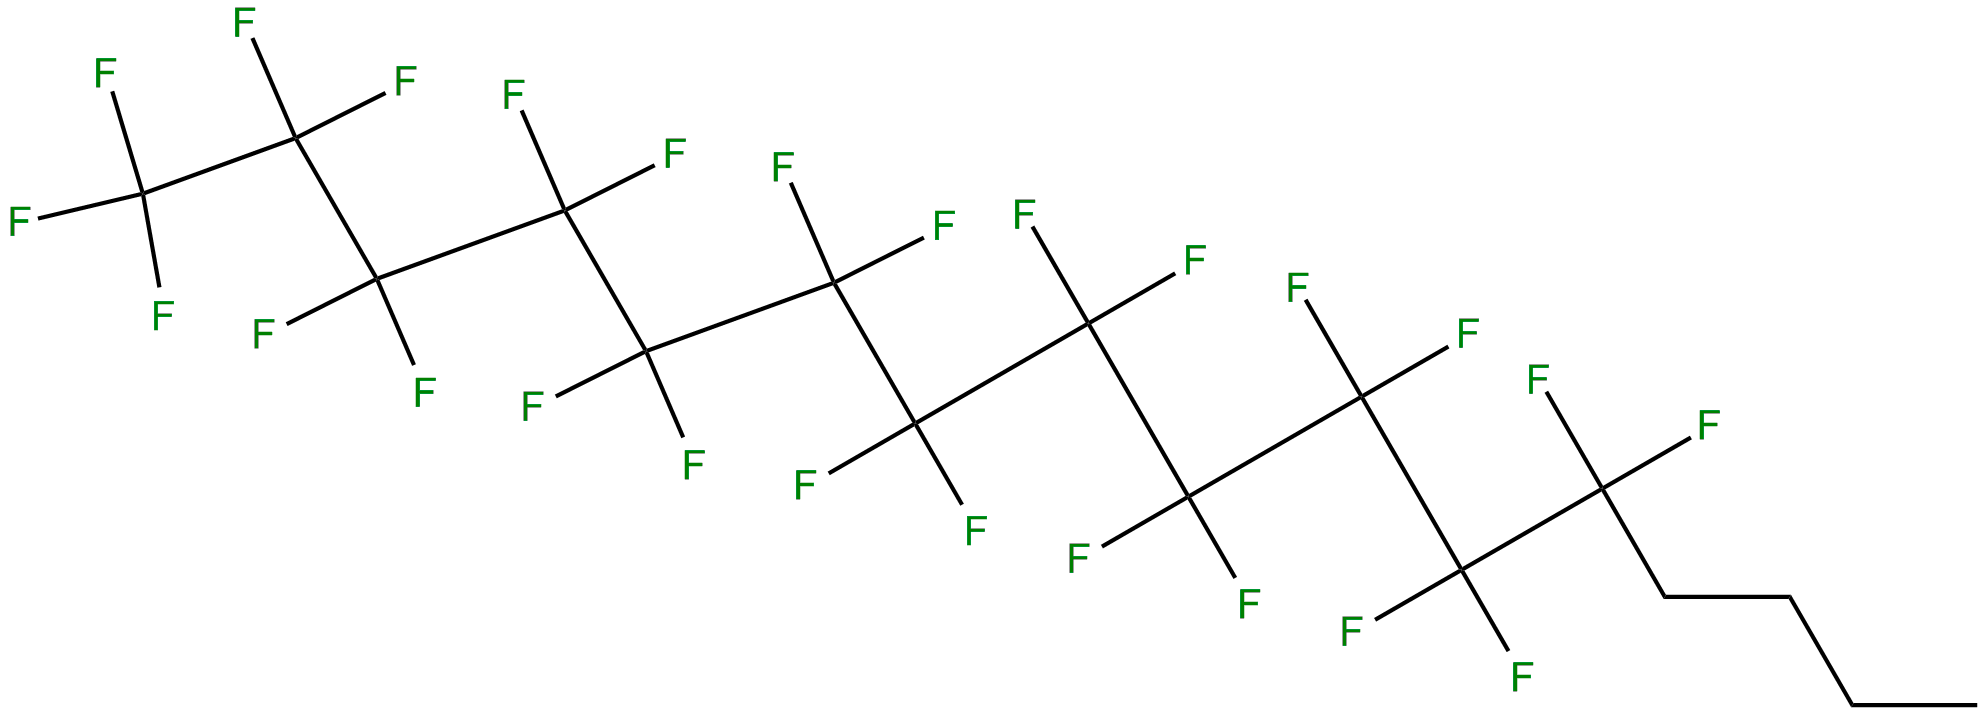 Image of 1,1,1,2,2,3,3,4,4,5,5,6,6,7,7,8,8,9,9,10,10,11,11,12,12-pentacosafluorohexadecane